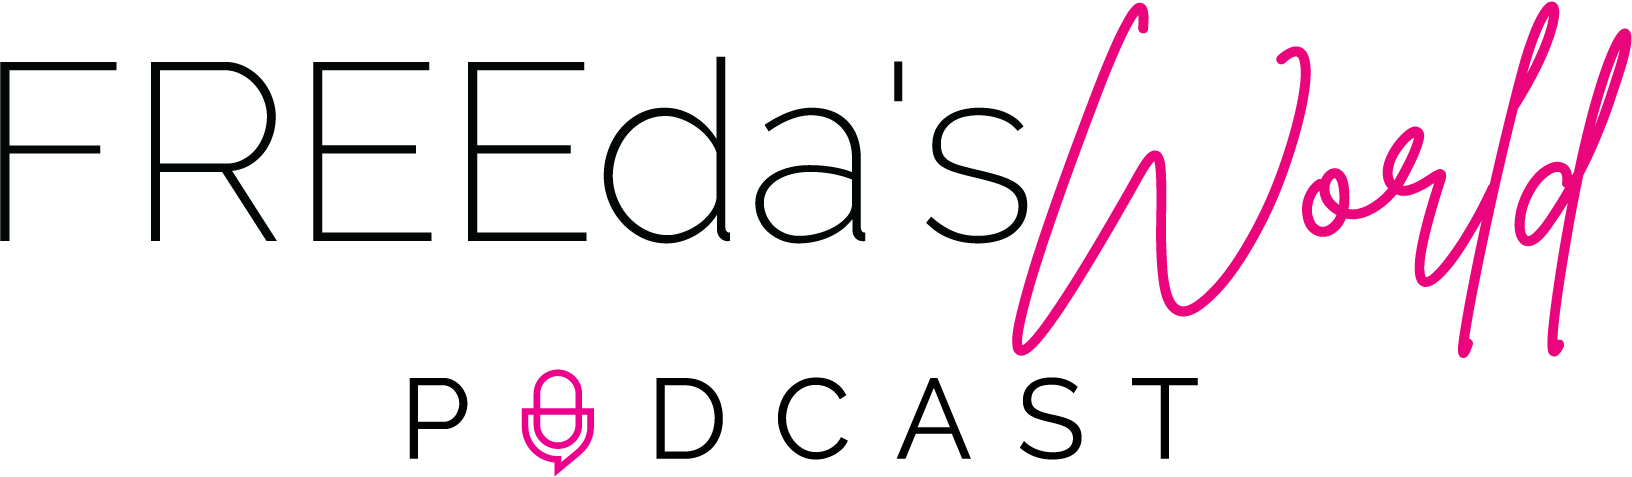 Freedas World Podcast Logo September 19, 2020